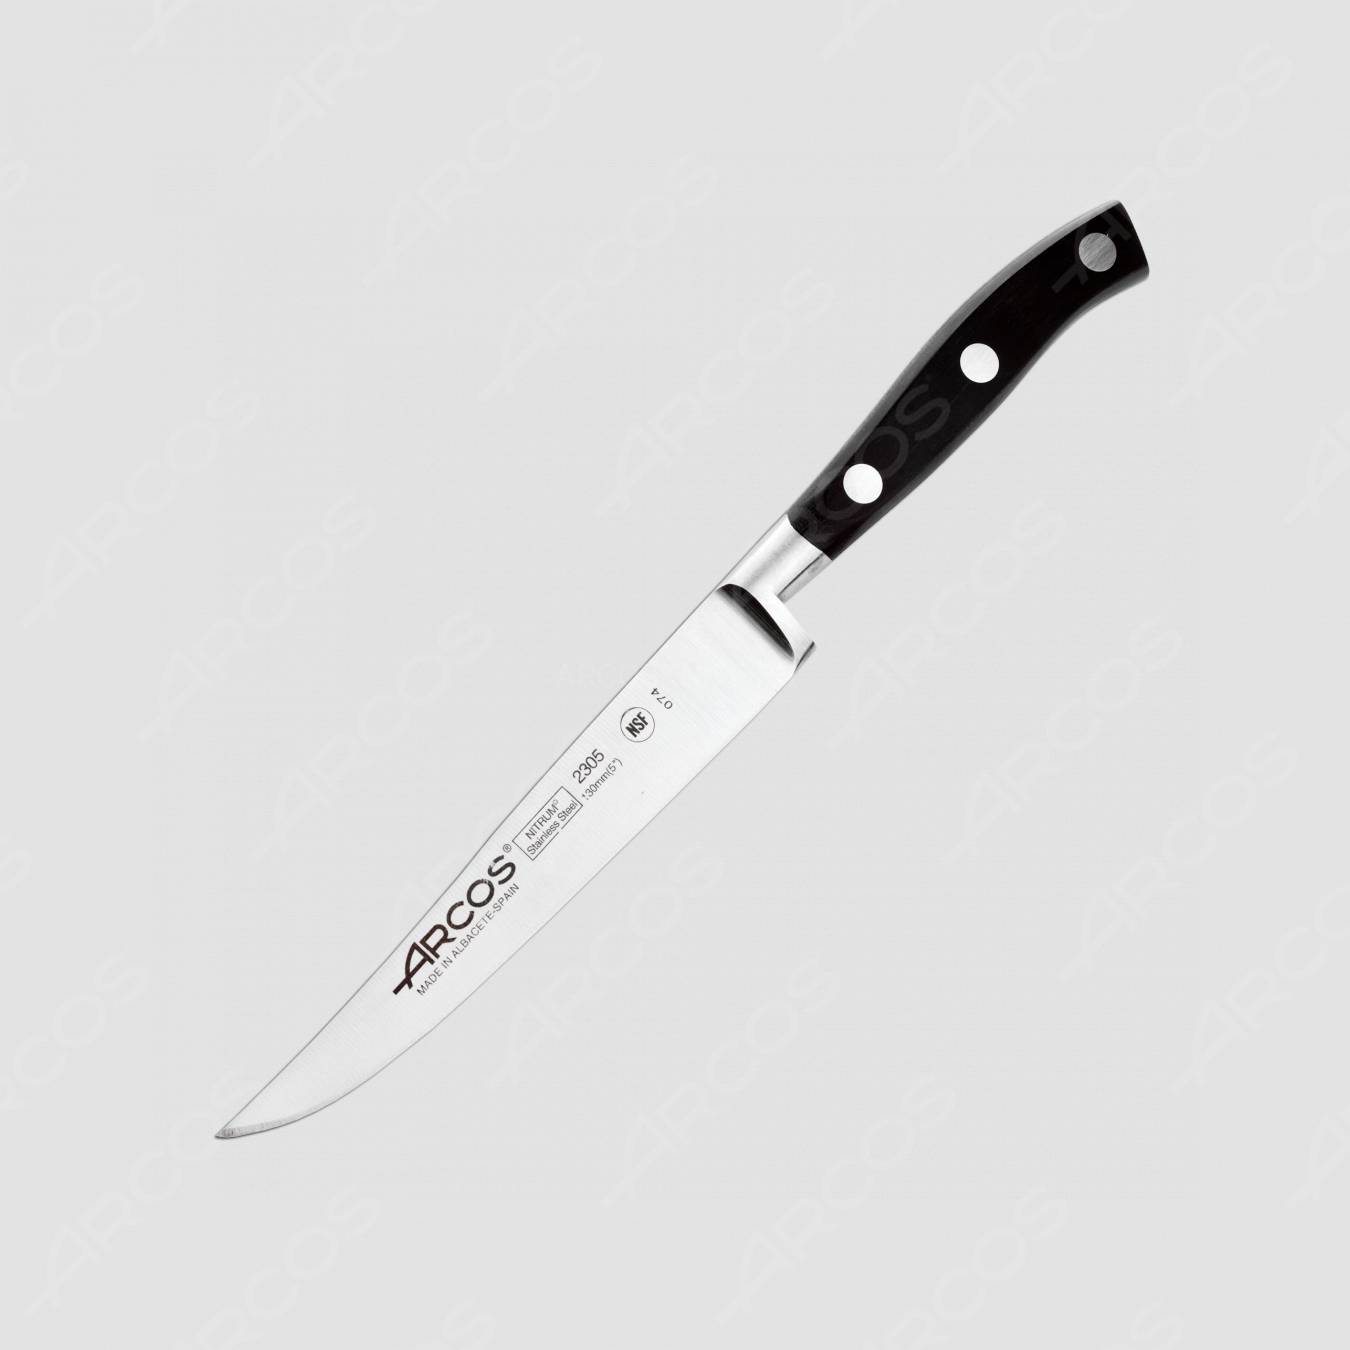 Нож кухонный для стейка 13 см, серия Riviera, ARCOS, Испания